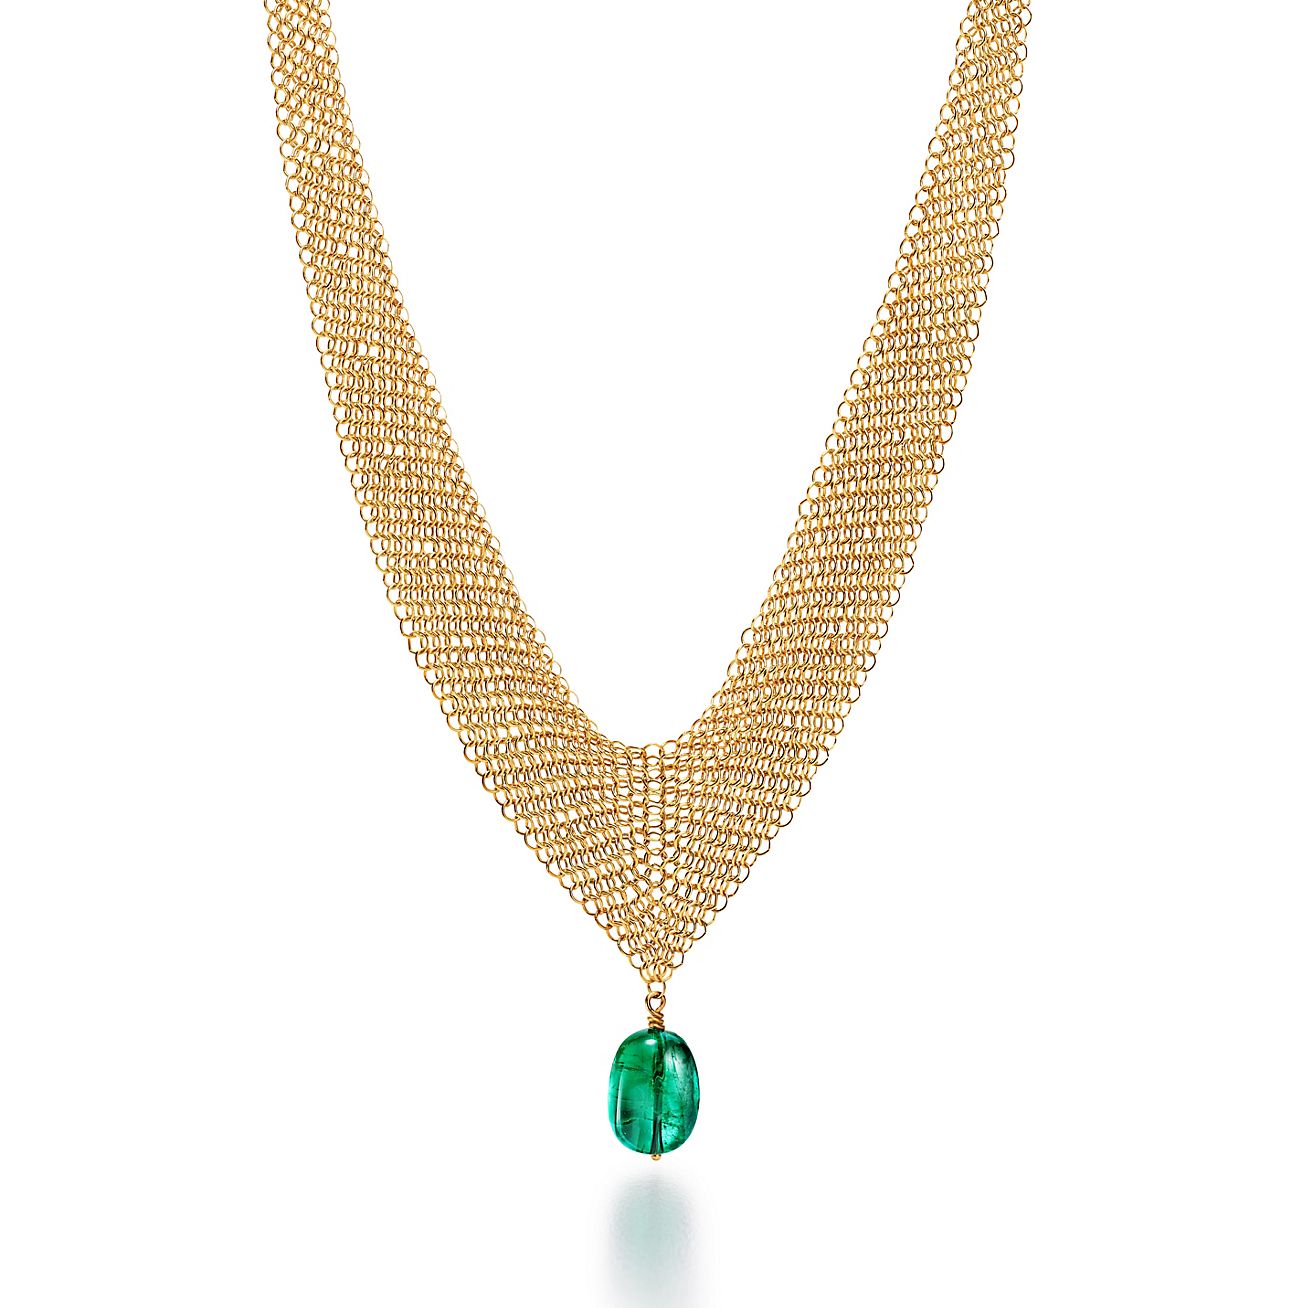 Tiffany & Co. Elsa Peretti Mesh Necklace & Green Jade Pendant | Elsa Peretti  | Nadine Krakov Collection